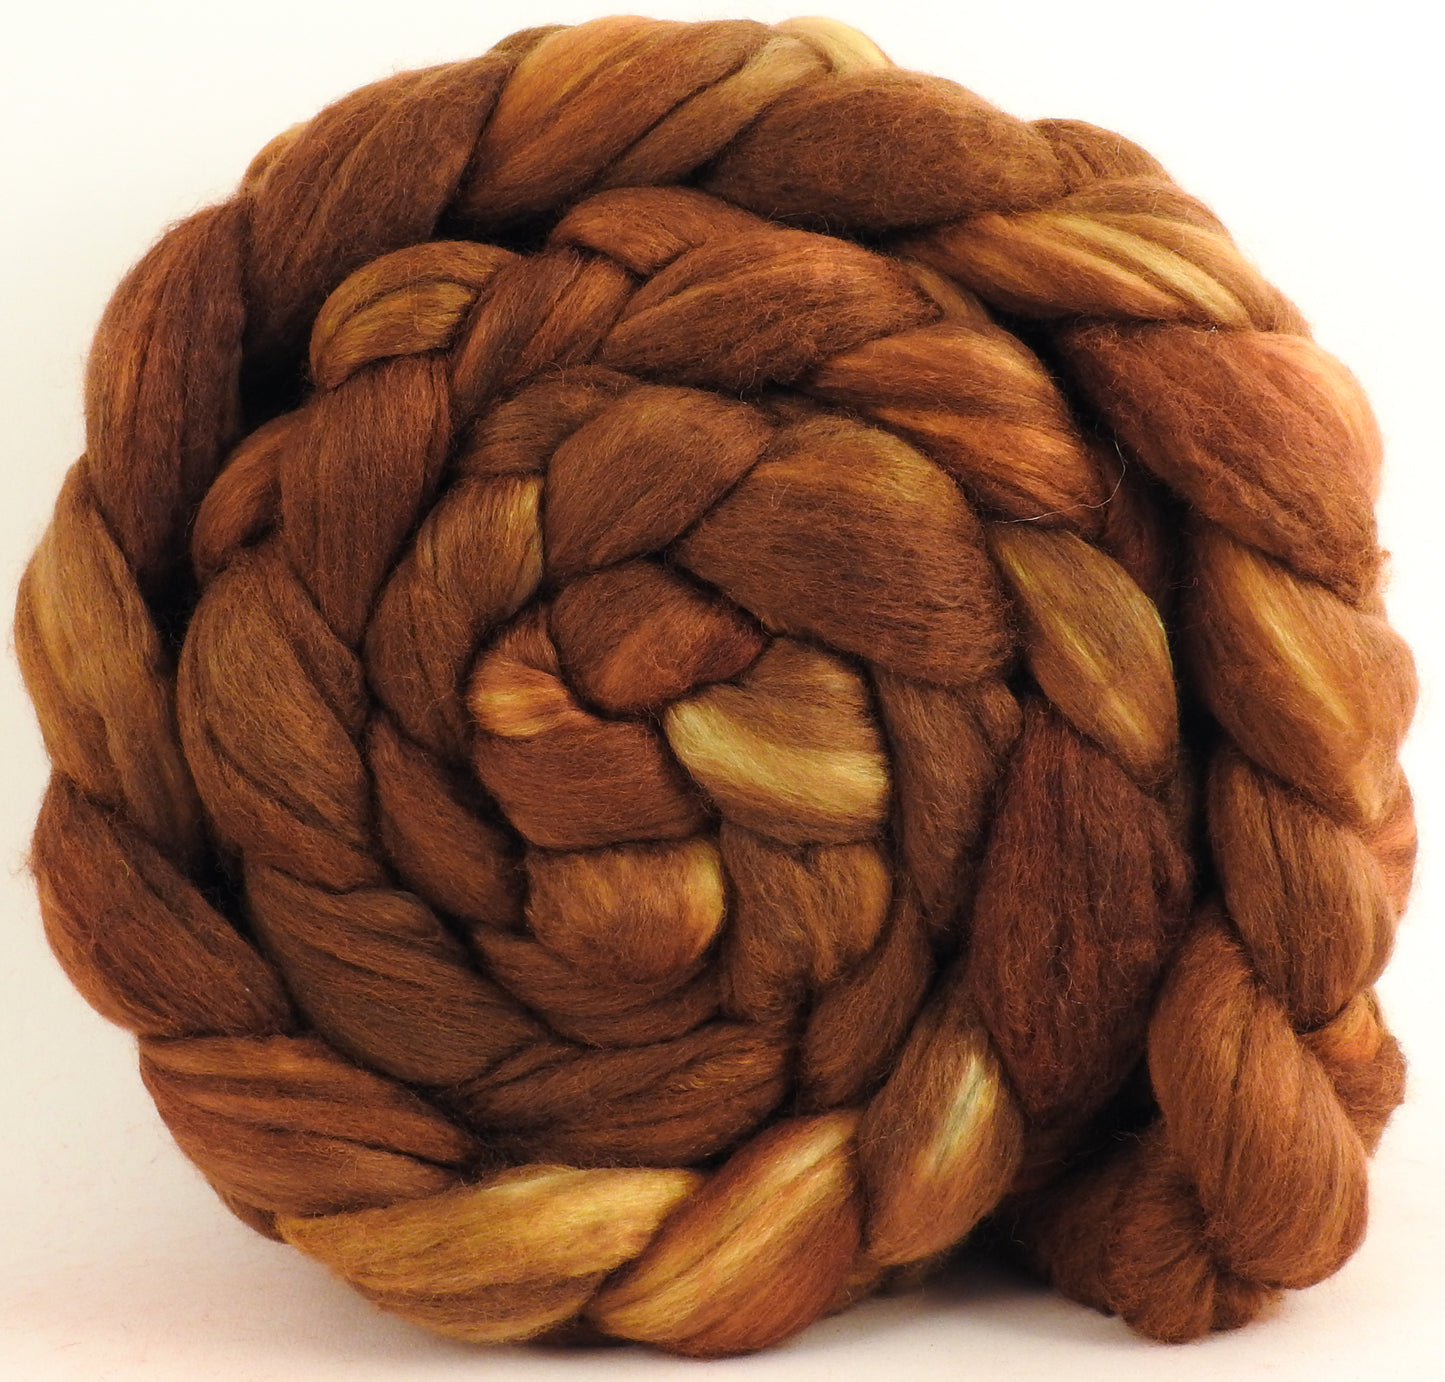 Bronze - Merino/ Mulberry Silk (50/50) - (5 oz)